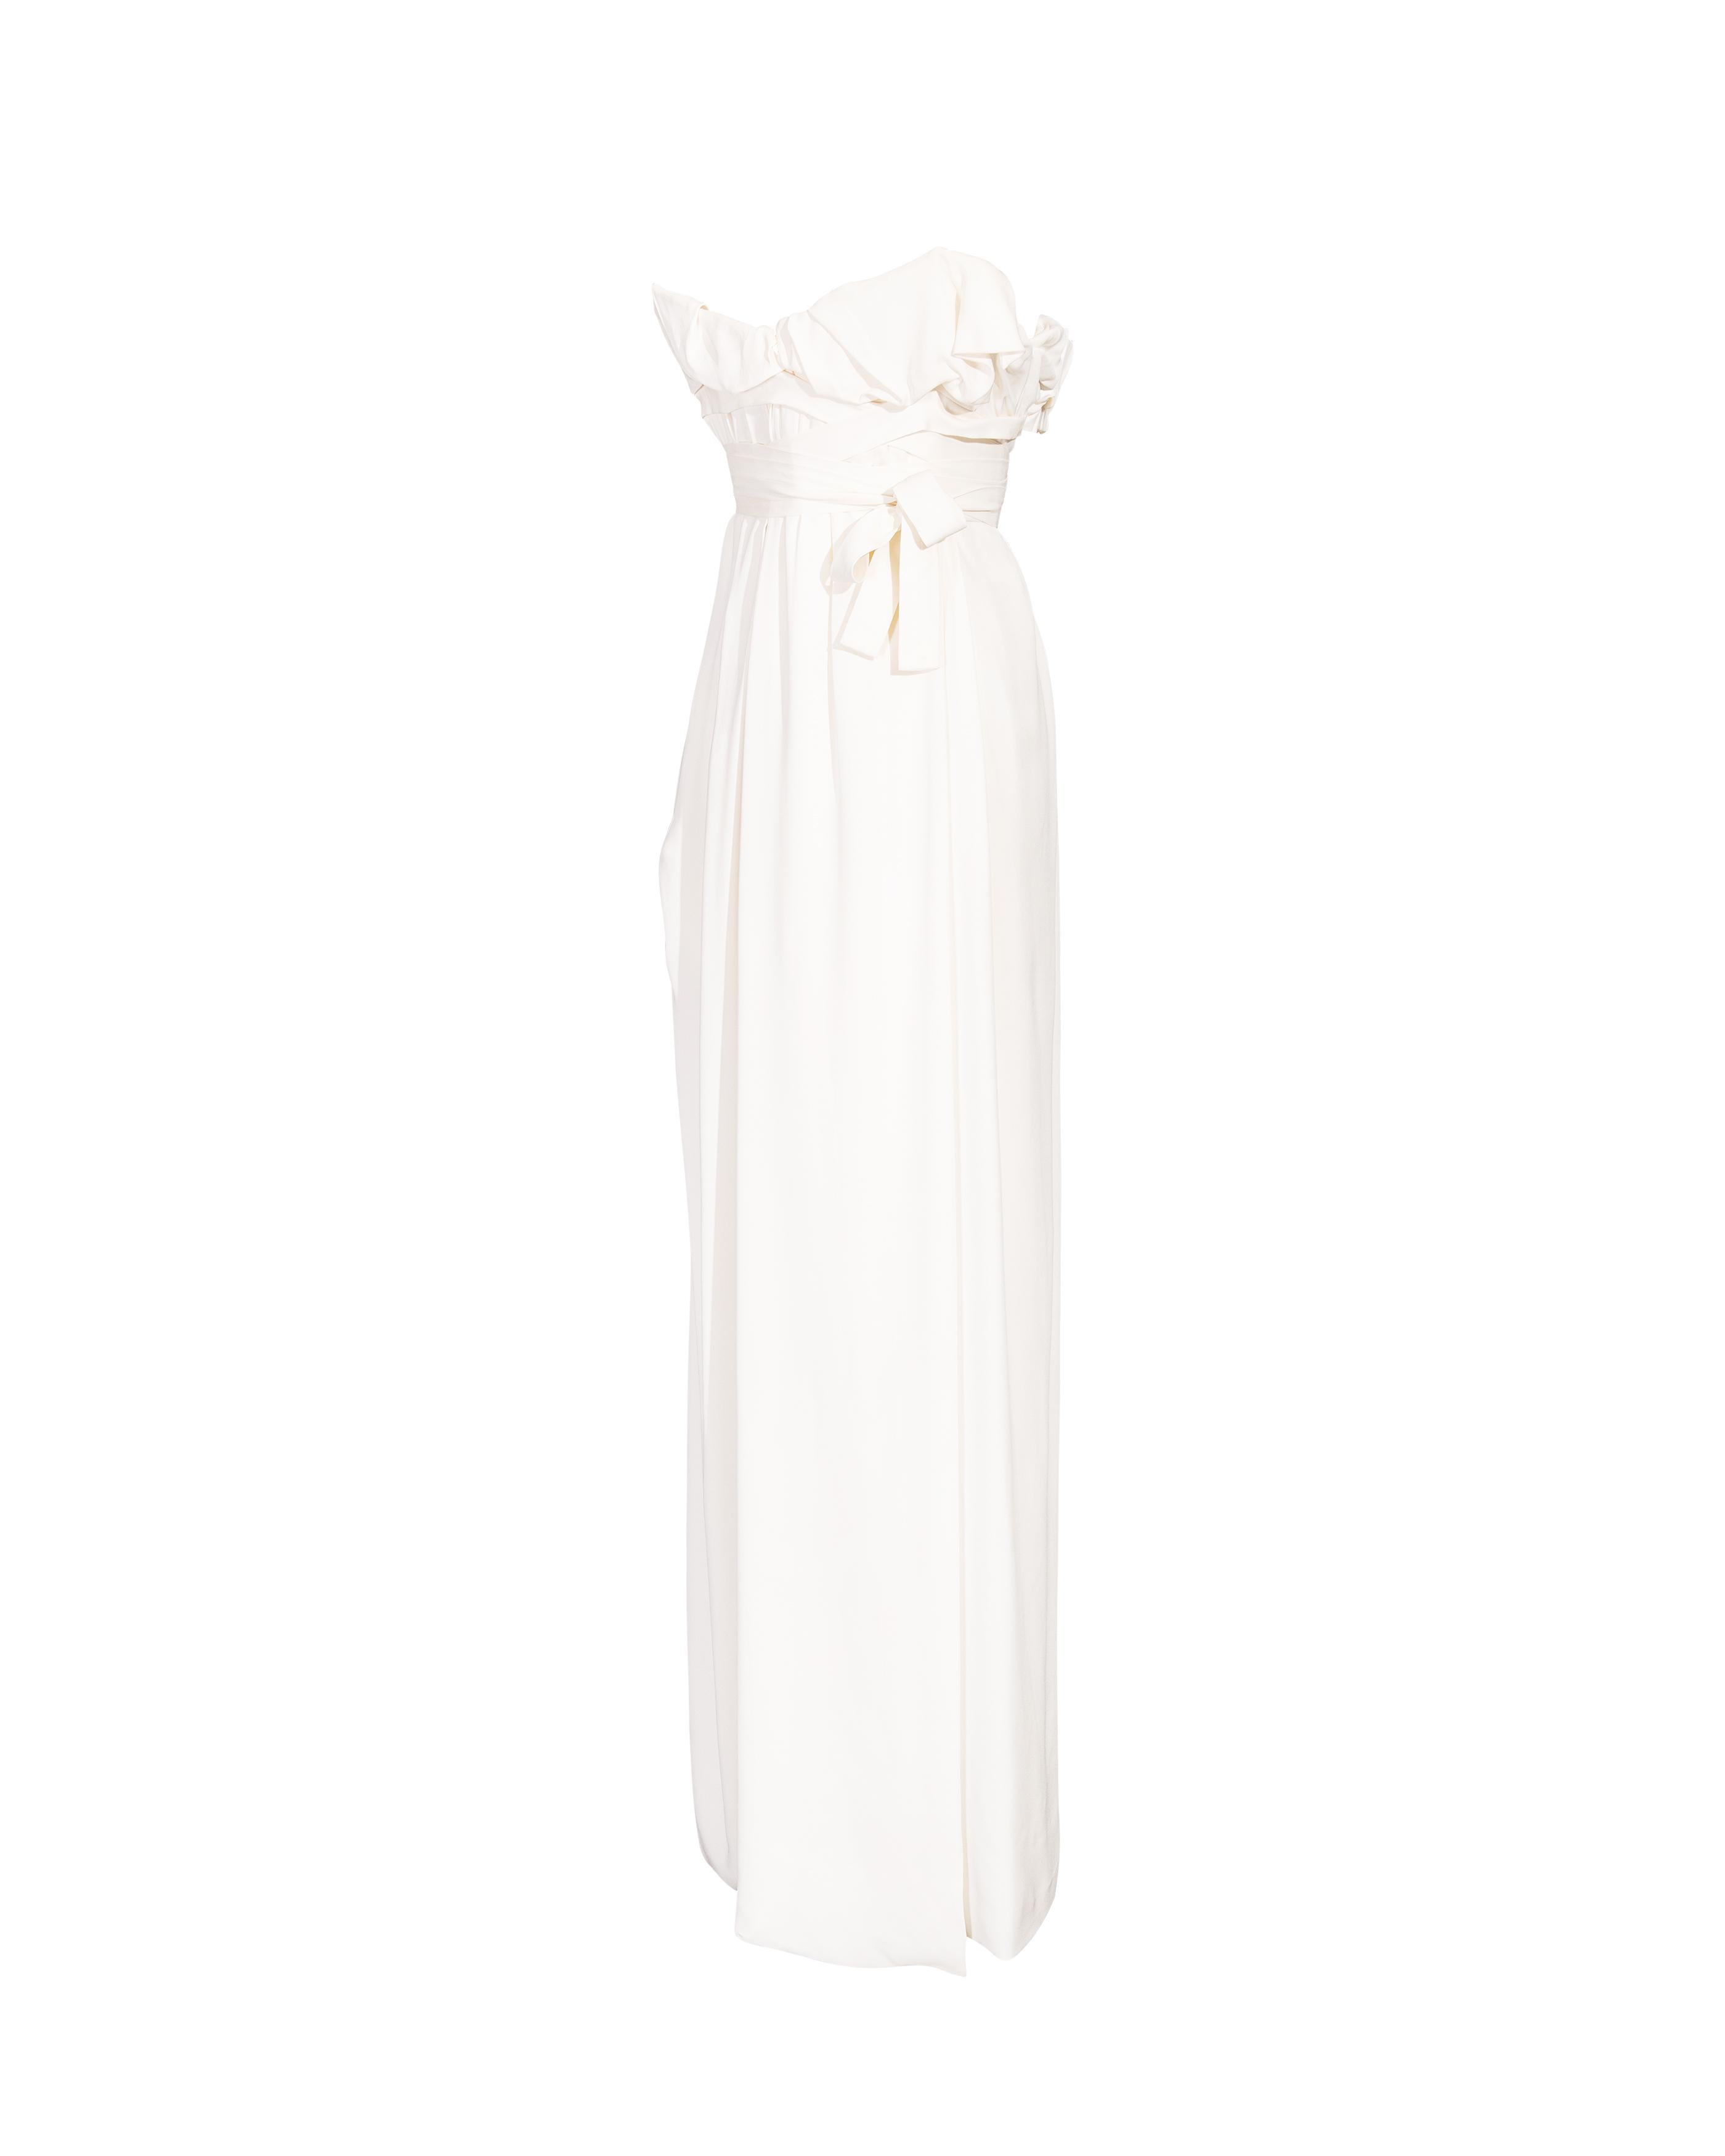 Gris S/S 2014 Vivienne Westwood White Strapless Silk Drape Gown (robe drapée en soie sans bretelles)